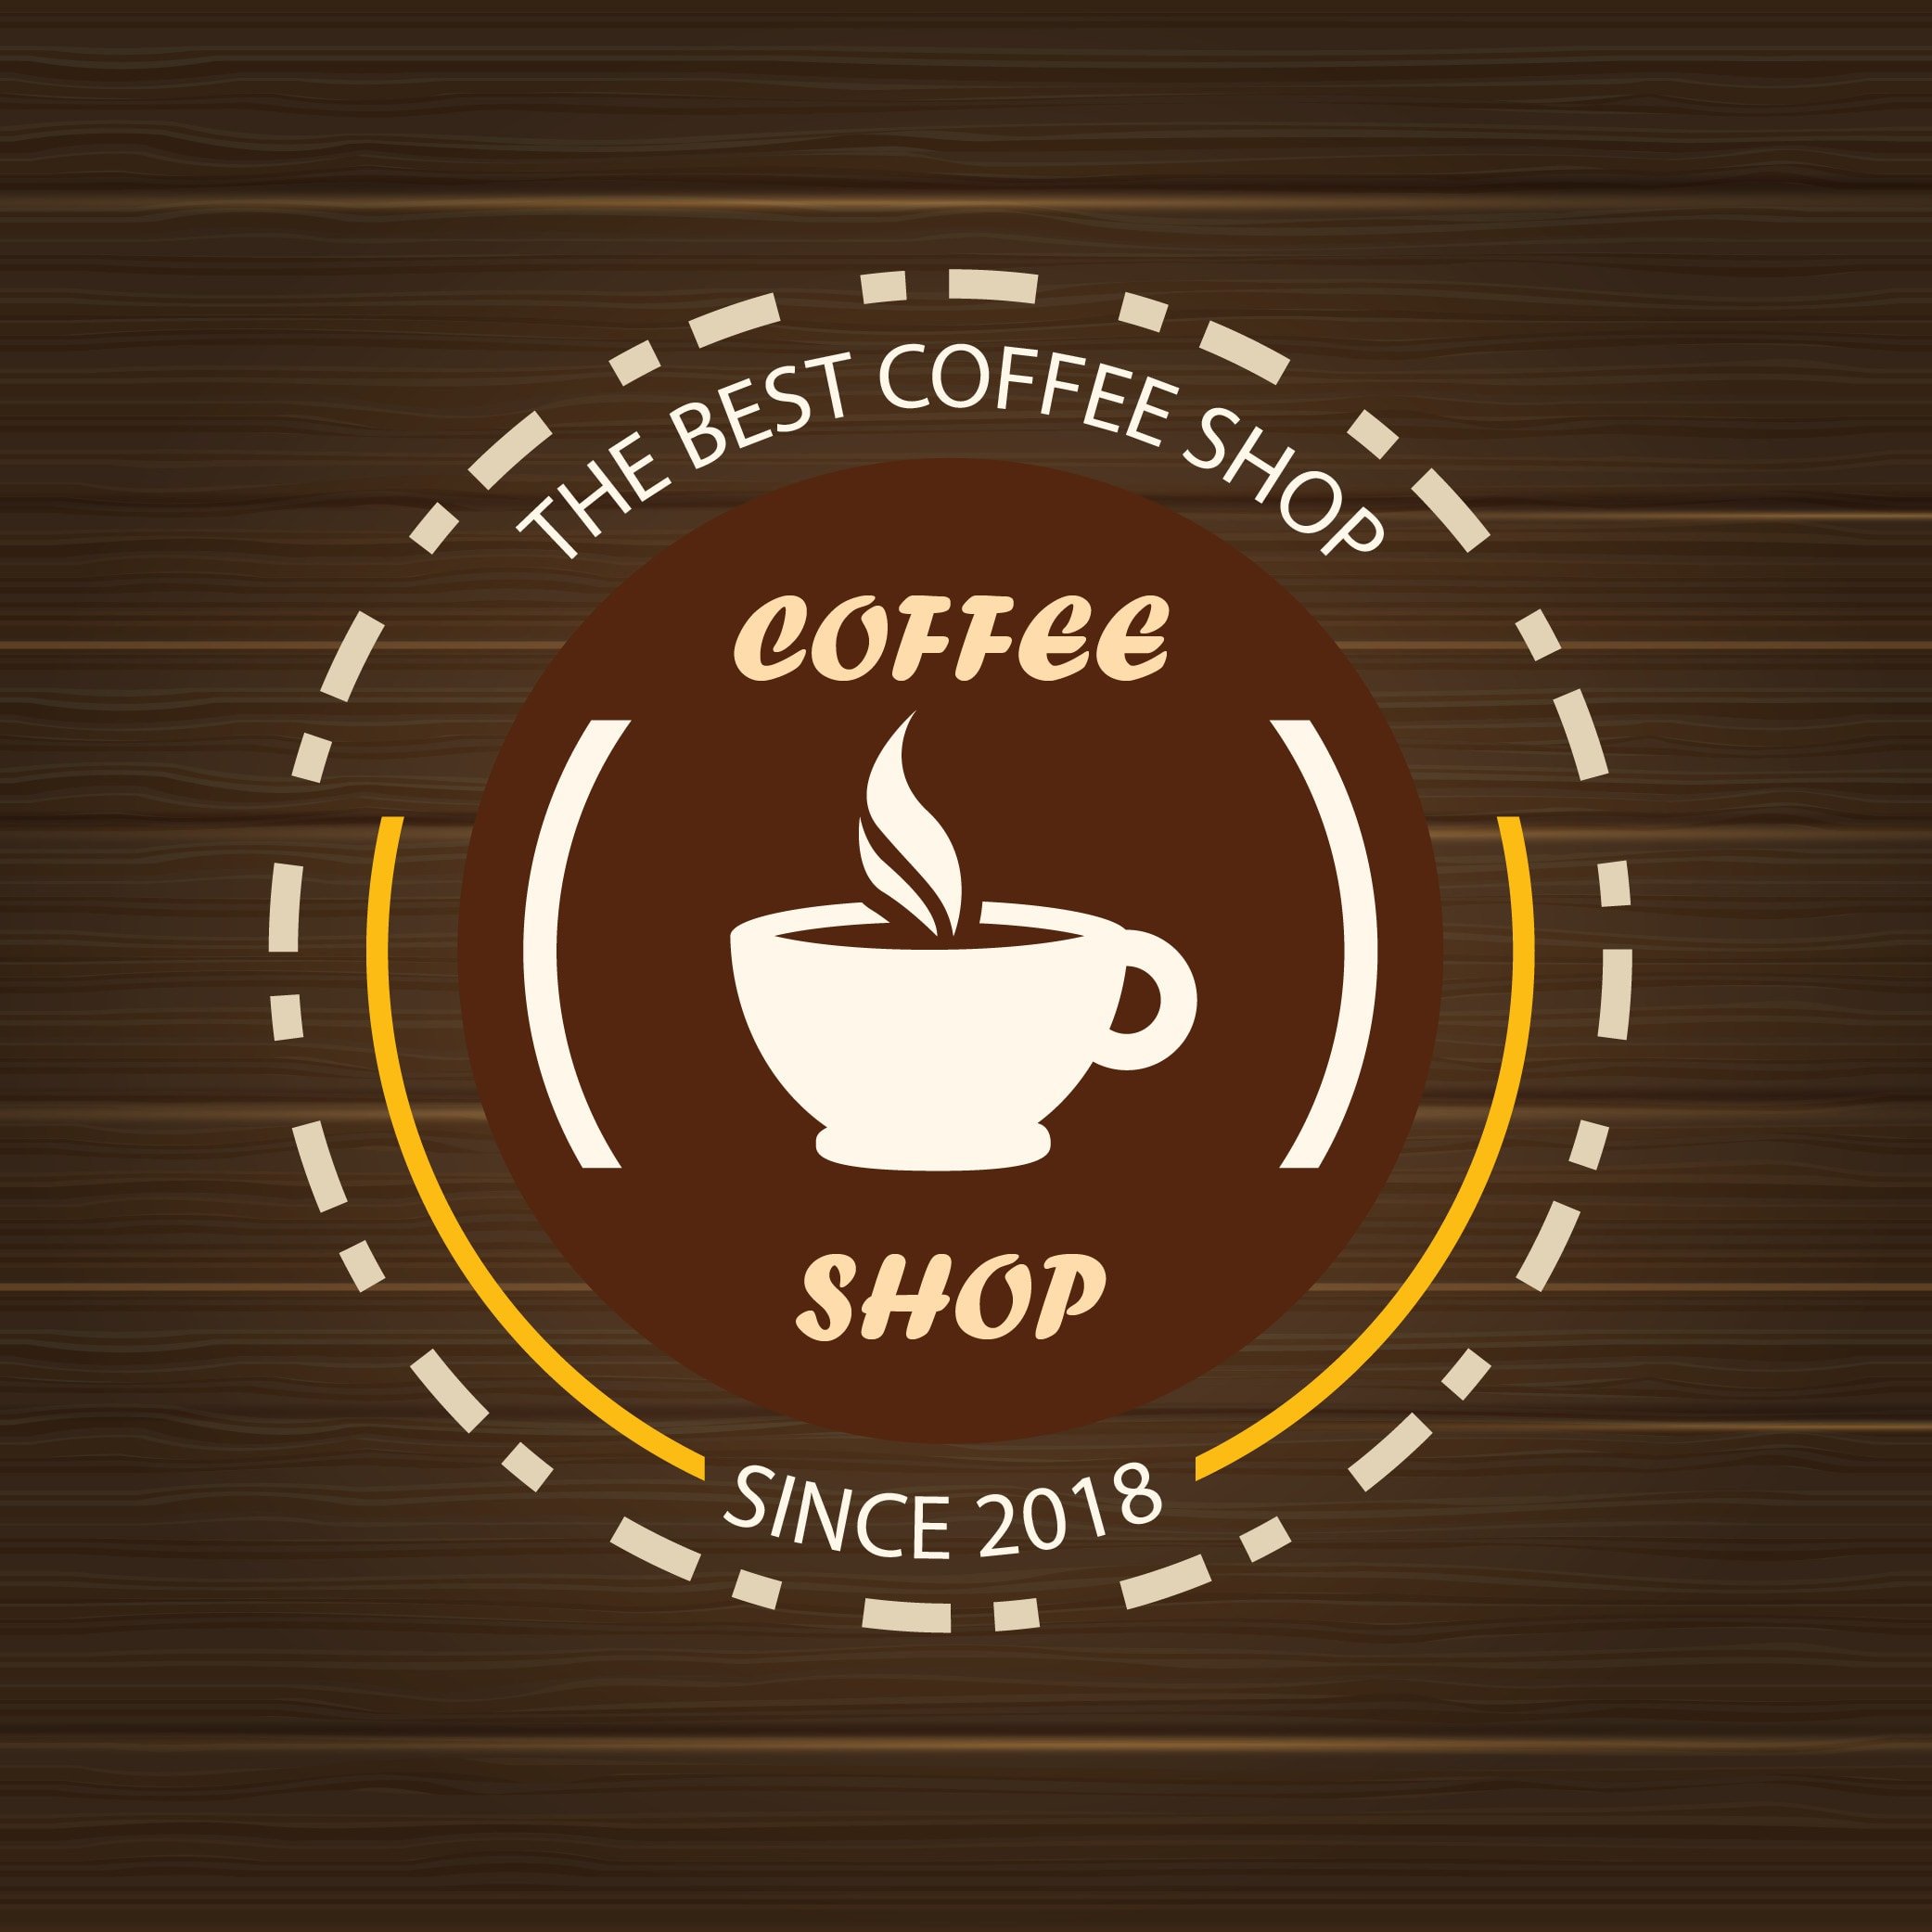 Метро шоссе такси кофе. Логотип кофейни. Логотипы кофеен. Кофе лейбл. Идеи для логотипов кофе.